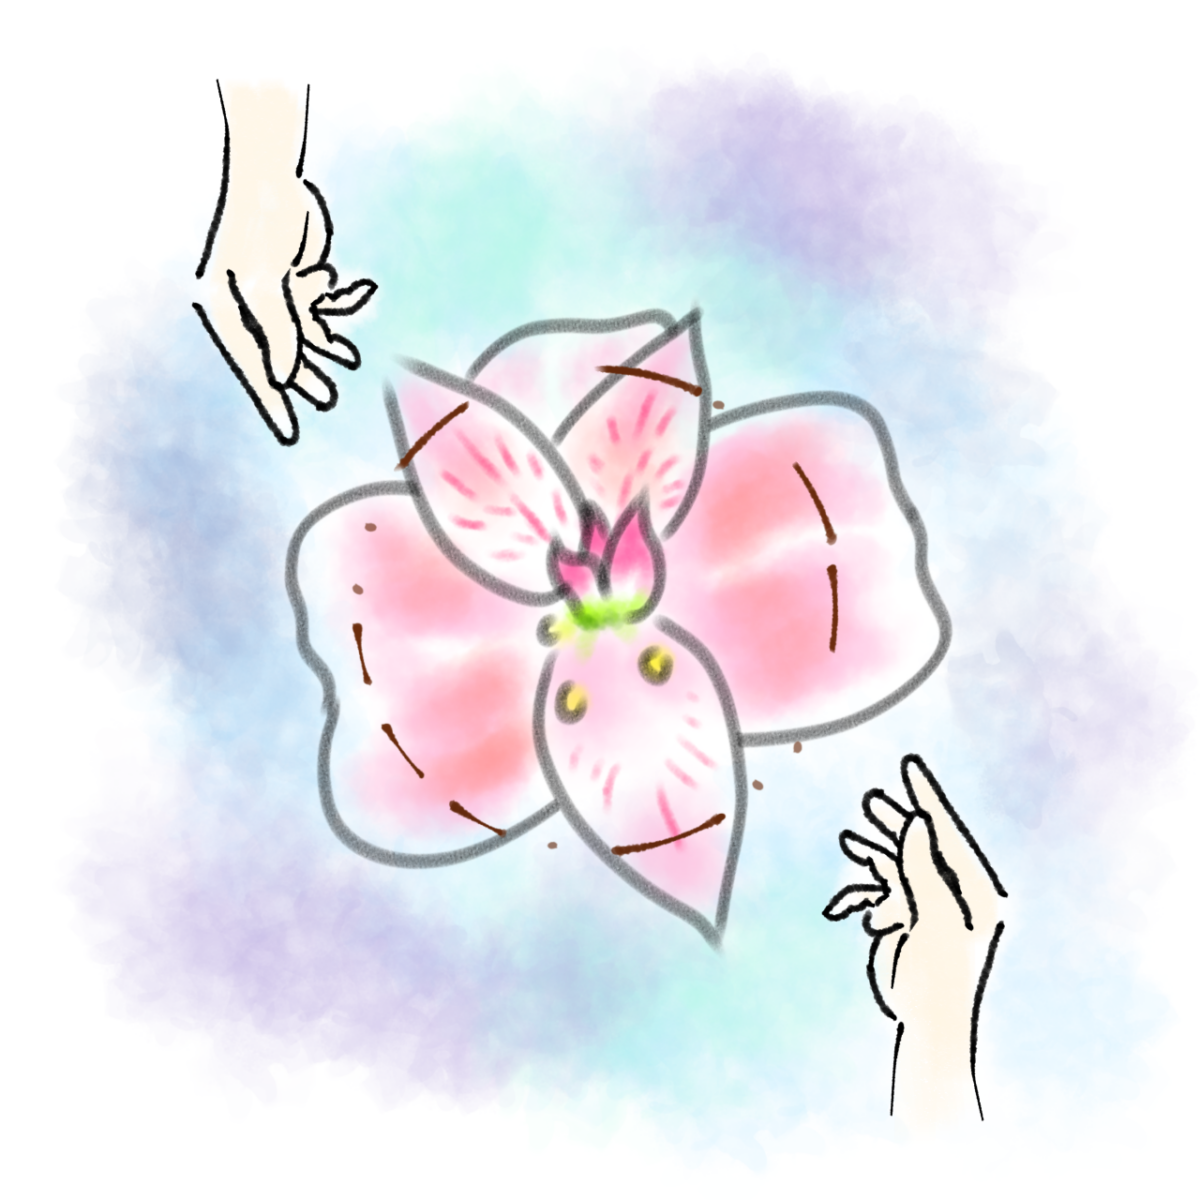 淡いピンクと白の大きな一輪の花を背景に、その中央へ向かい二人の手が近づいている